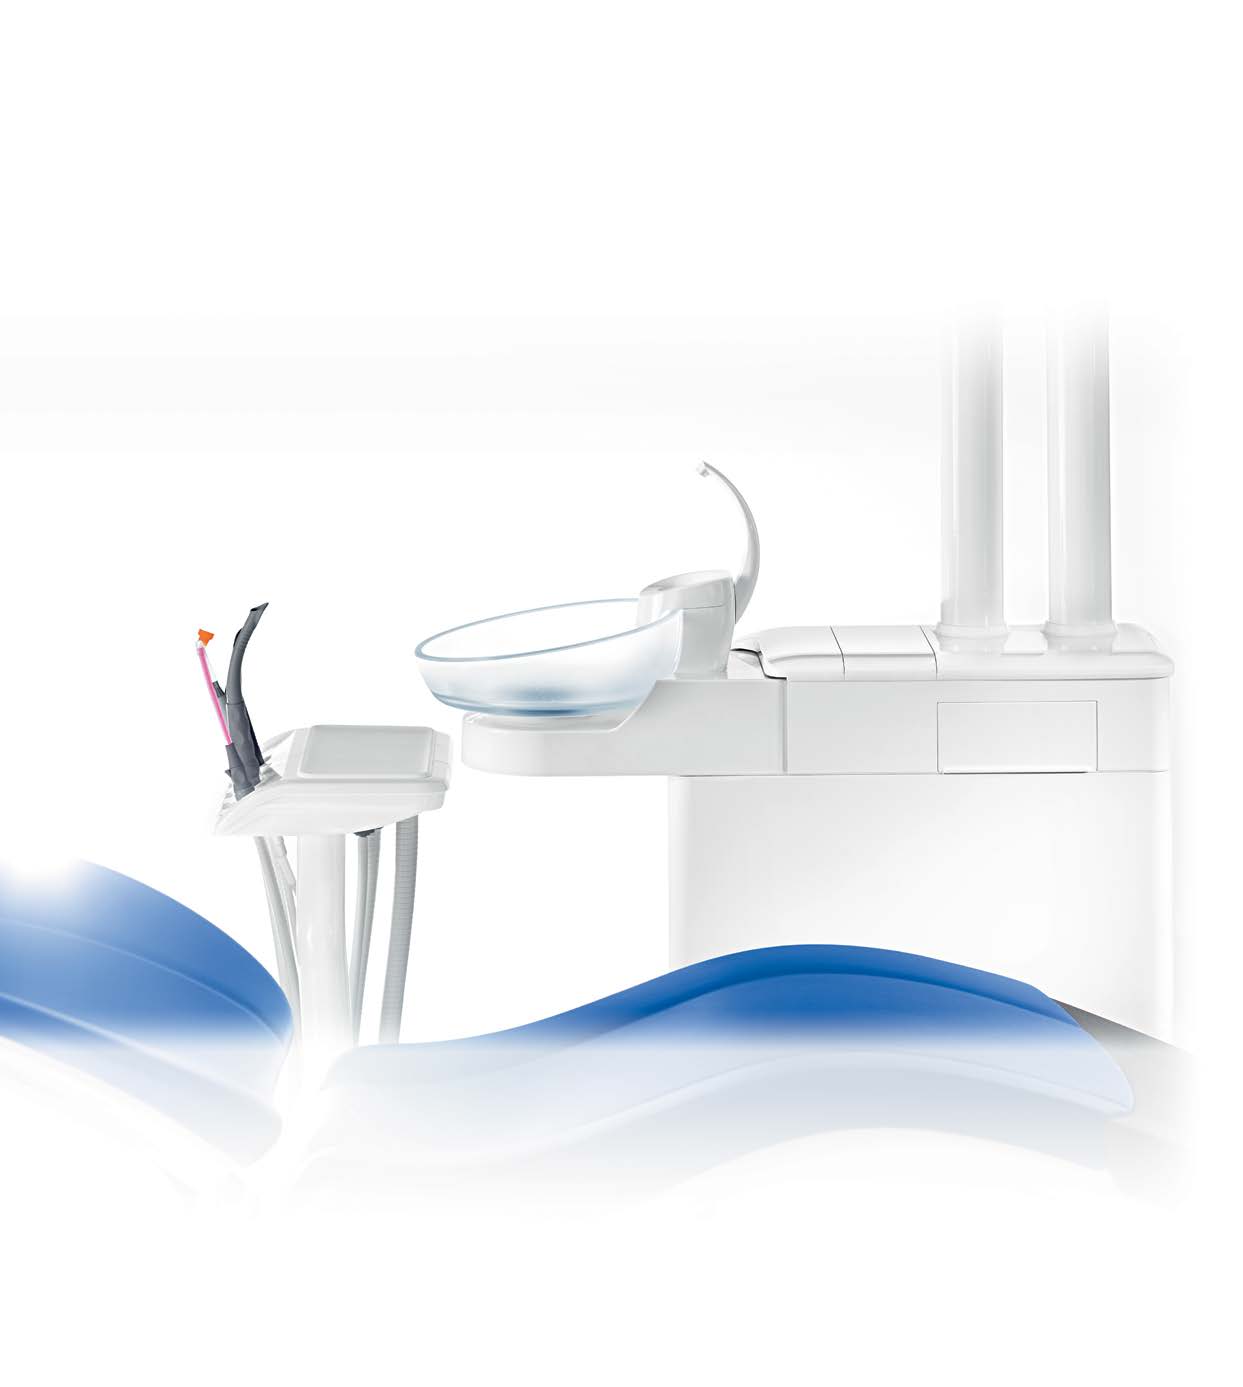 INTEGO pro INTEGO pron hygieniaratkaisut ovat täysin automaattisia ja korkealla tasolla.